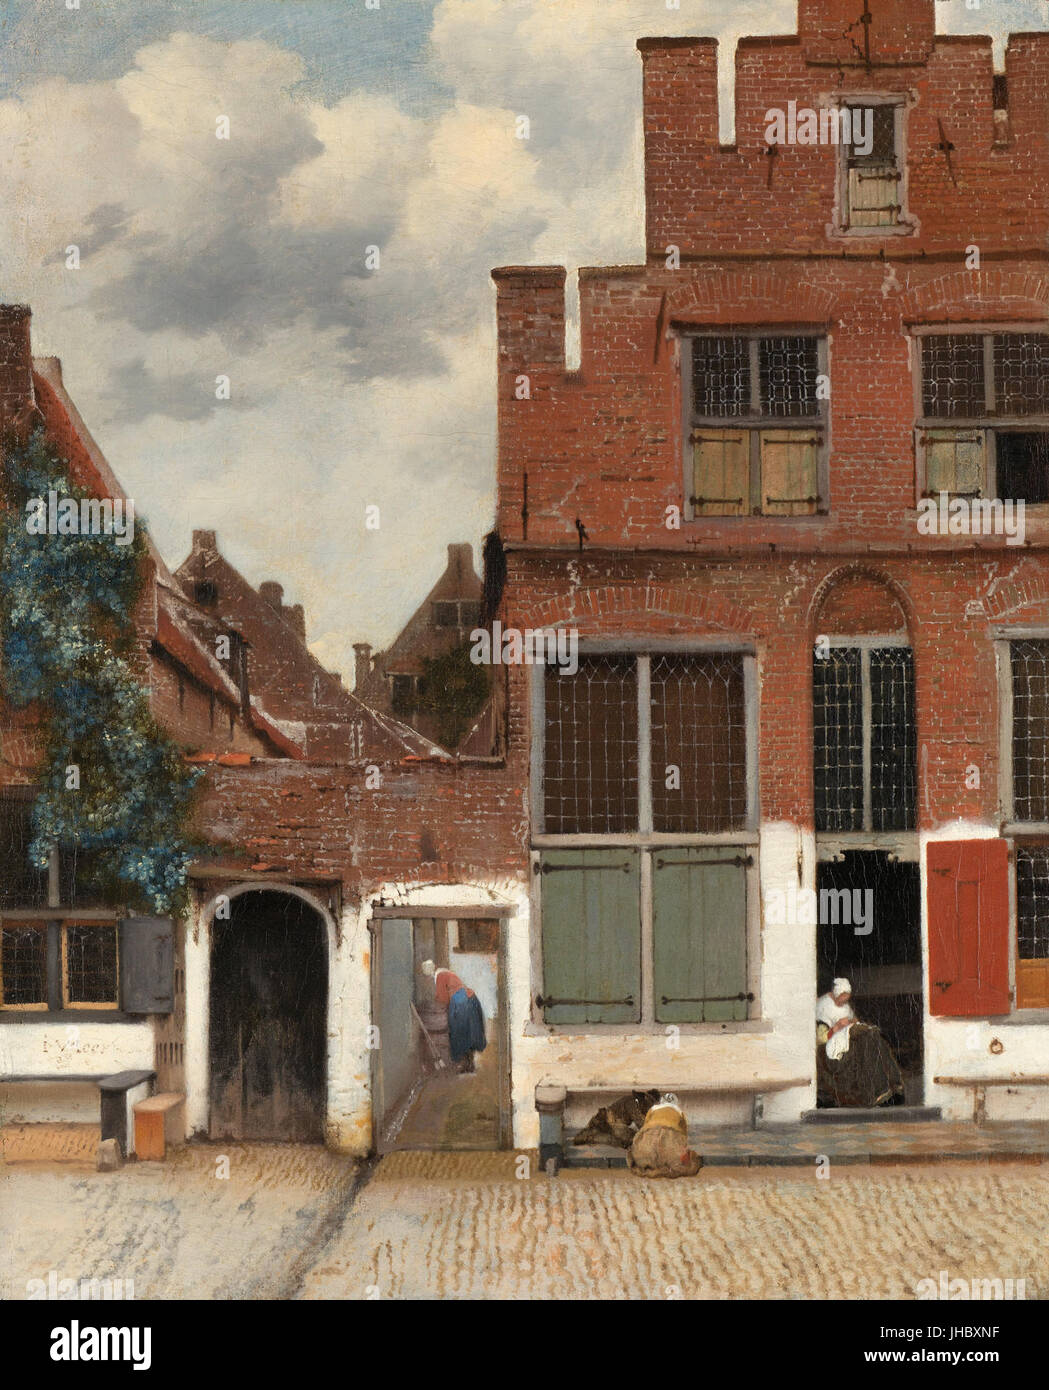 Johannes Vermeer - Gezicht op huizen in Delft, bekend als "Het straatje' - Foto Stock